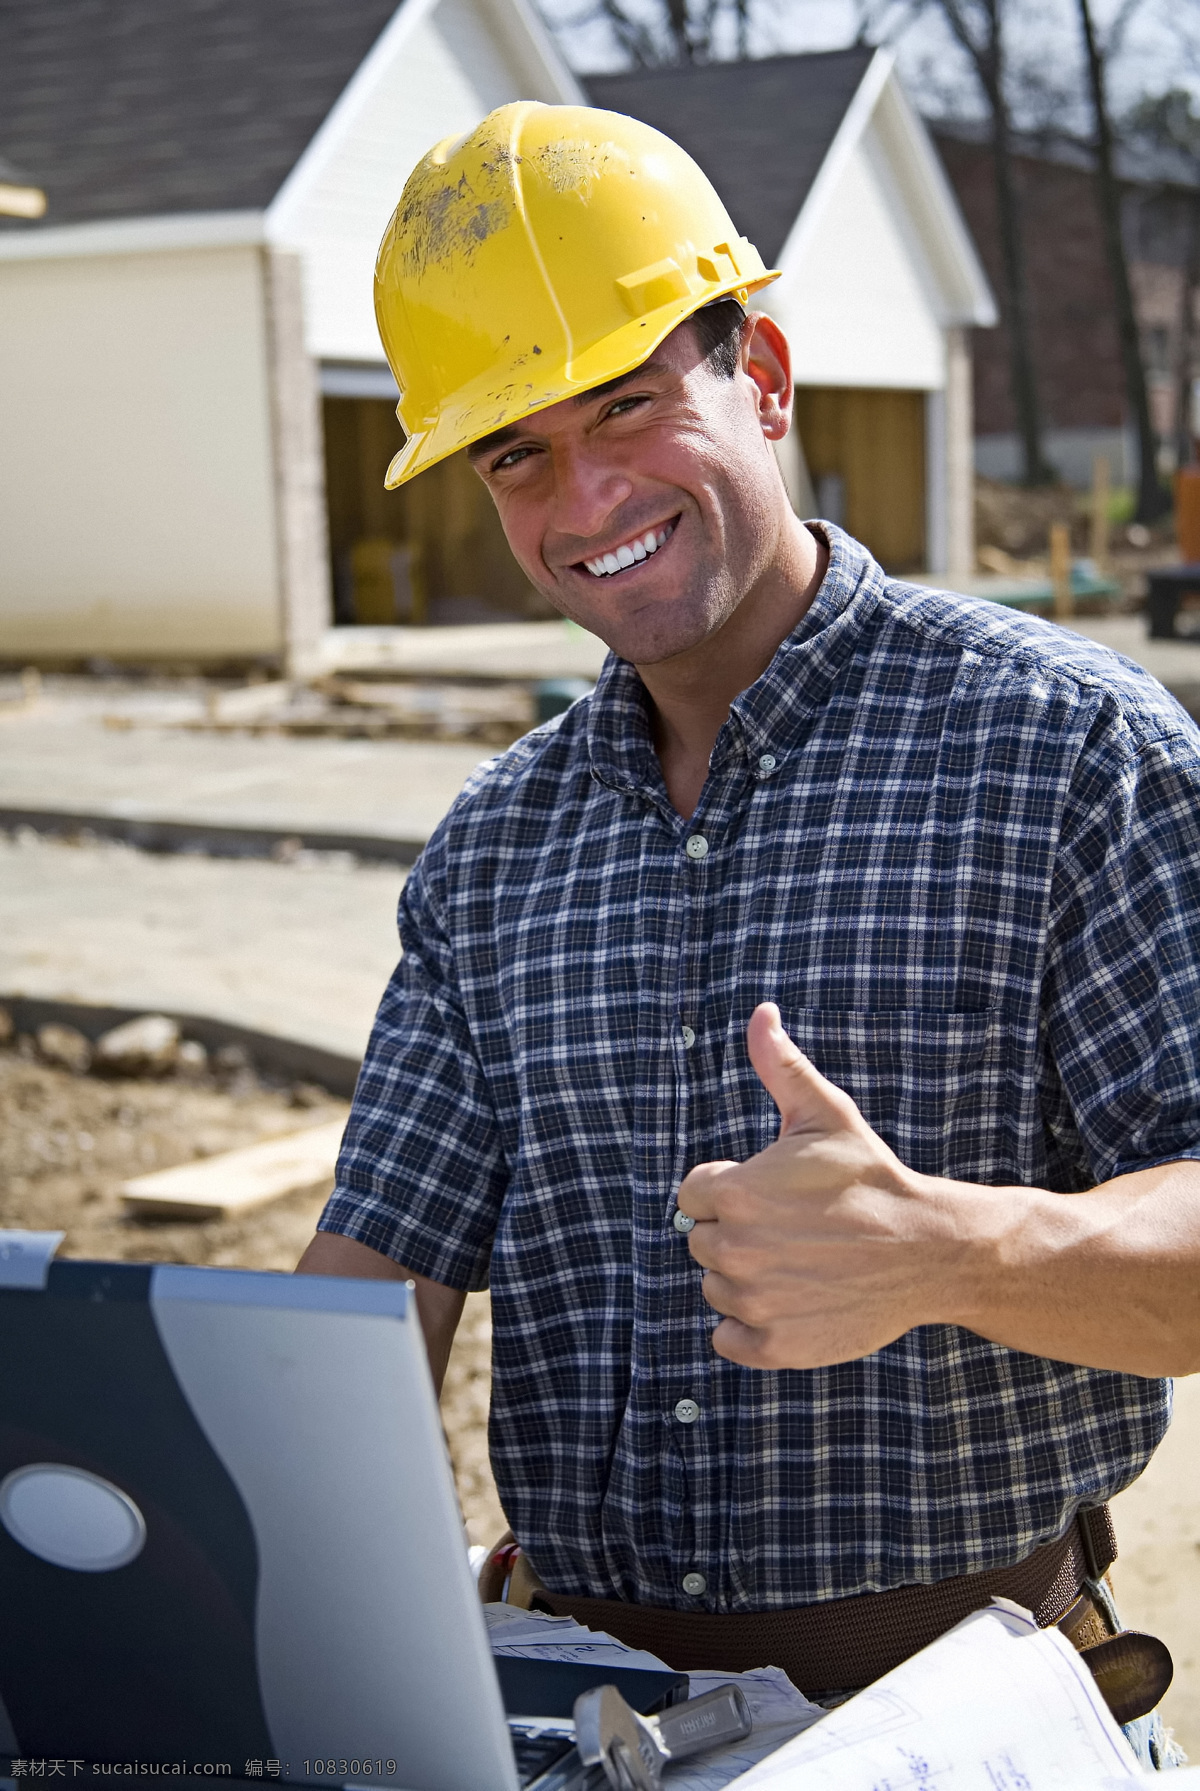 竖起 大拇指 建筑 工人 人物 建筑人物 职业 安全帽 成功 高兴 竖起大拇指 电脑 笔记本电脑 生活人物 人物图片